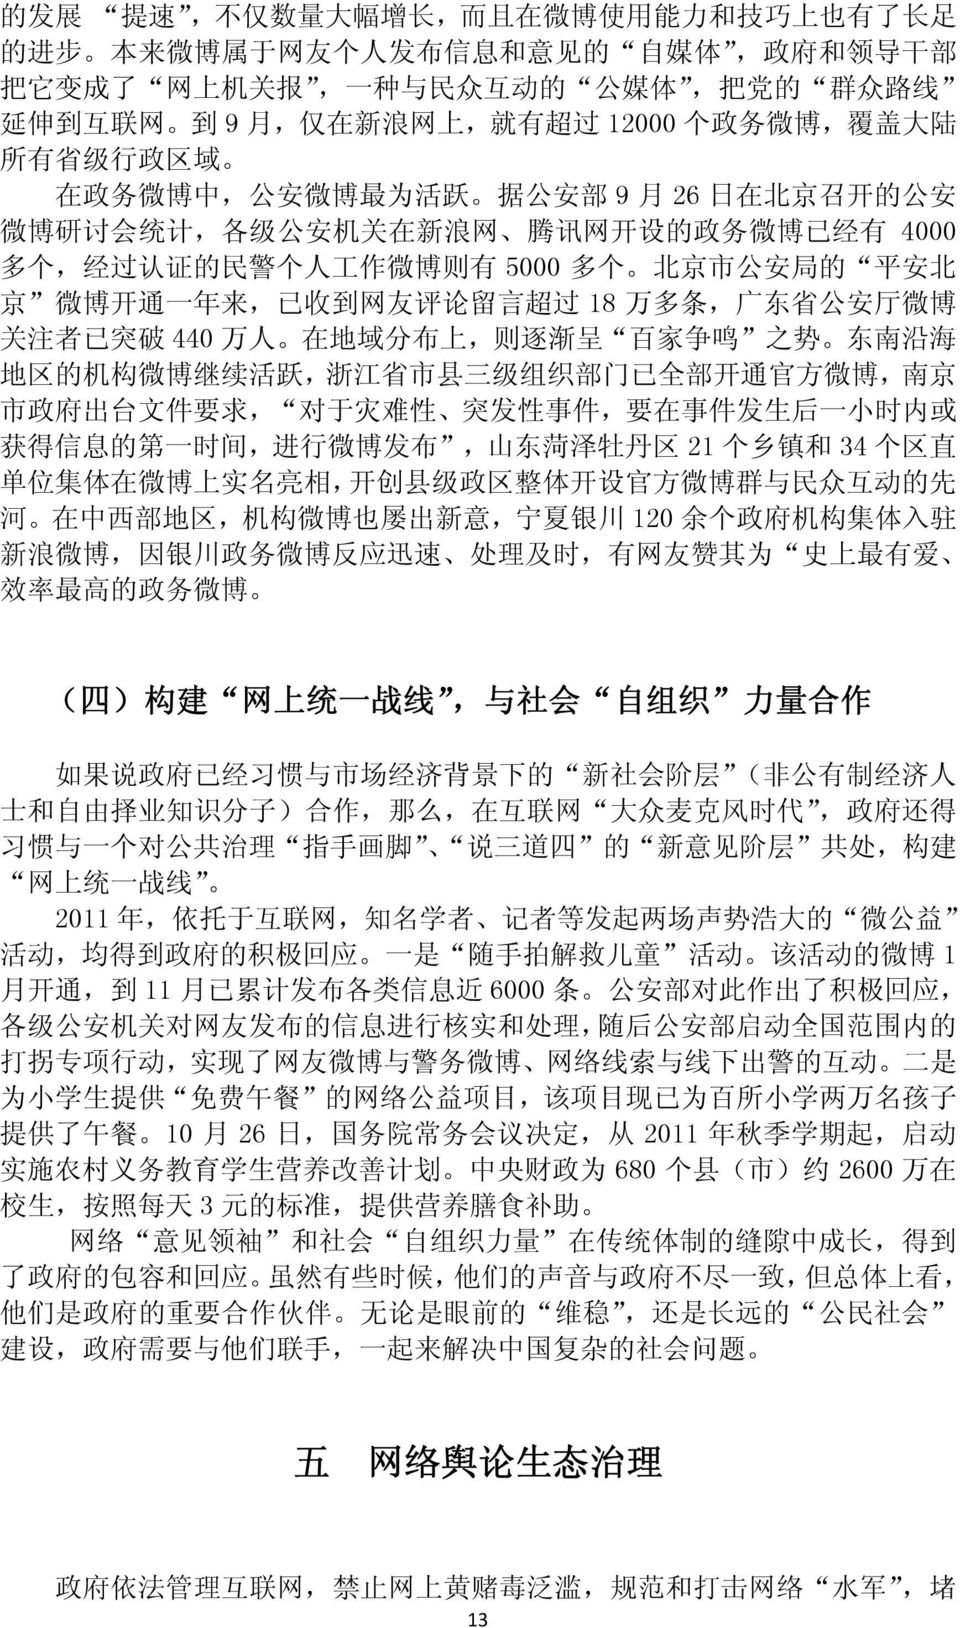 经 过 认 证 的 民 警 个 人 工 作 微 博 则 有 5000 多 个 北 京 市 公 安 局 的 平 安 北 京 微 博 开 通 一 年 来, 已 收 到 网 友 评 论 留 言 超 过 18 万 多 条, 广 东 省 公 安 厅 微 博 关 注 者 已 突 破 440 万 人 在 地 域 分 布 上, 则 逐 渐 呈 百 家 争 鸣 之 势 东 南 沿 海 地 区 的 机 构 微 博